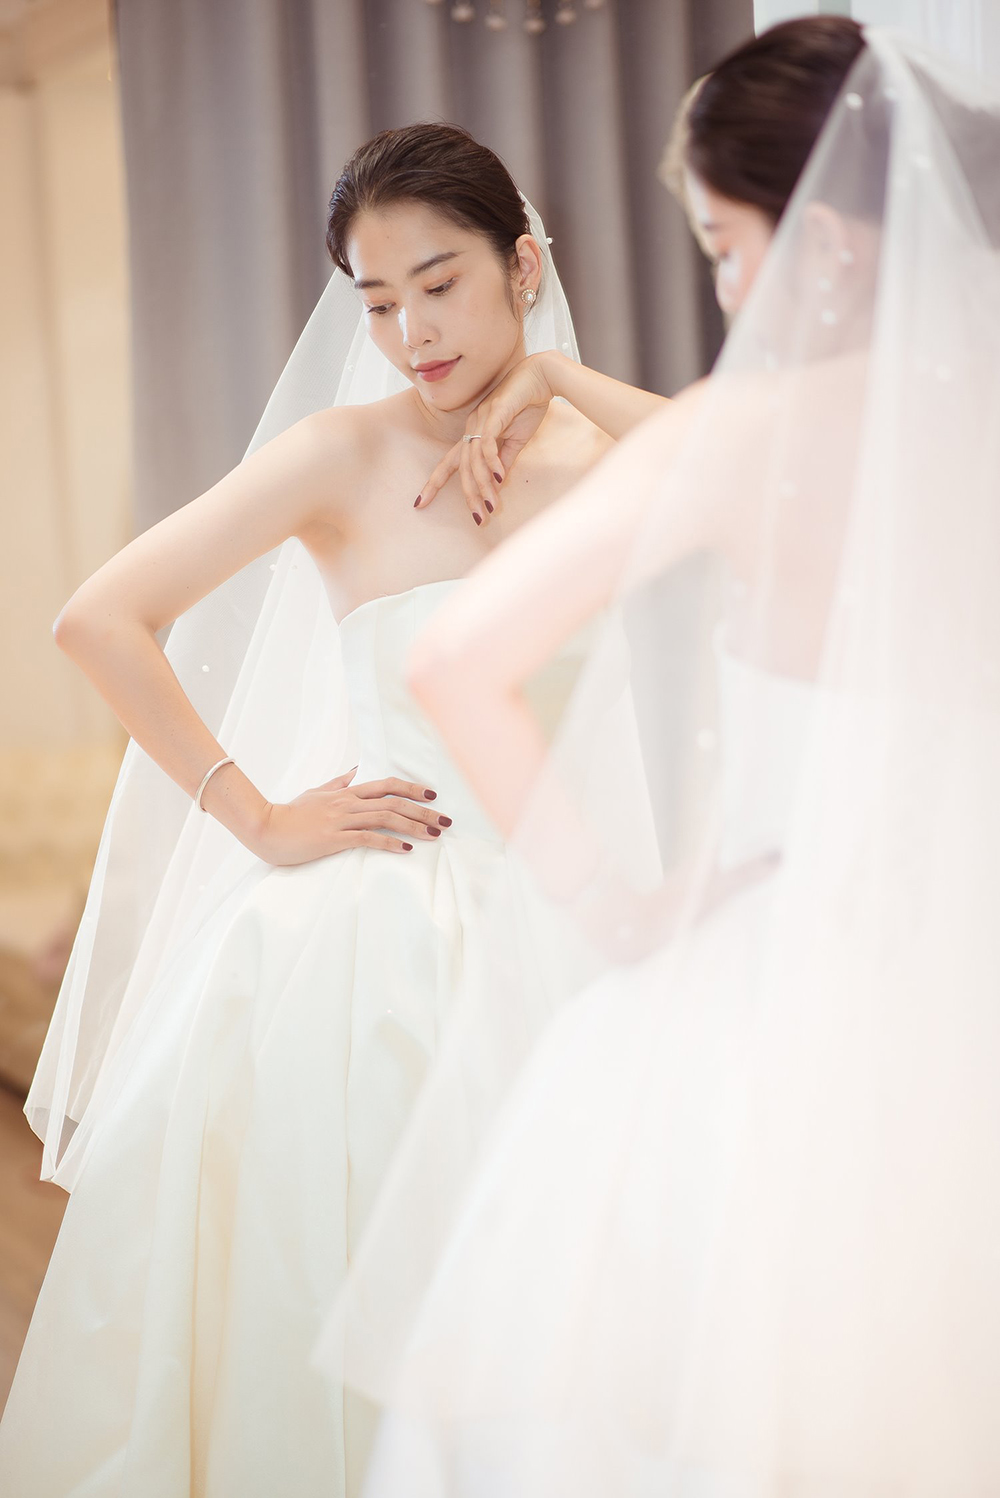 Trong bộ ảnh cưới của Nam Em, áo cưới thêu hoa tinh tế và độc đáo kết hợp với nụ cười tươi tắn của cô dâu, tạo nên một bức hình đẹp mắt và đầy cảm hứng cho người xem.